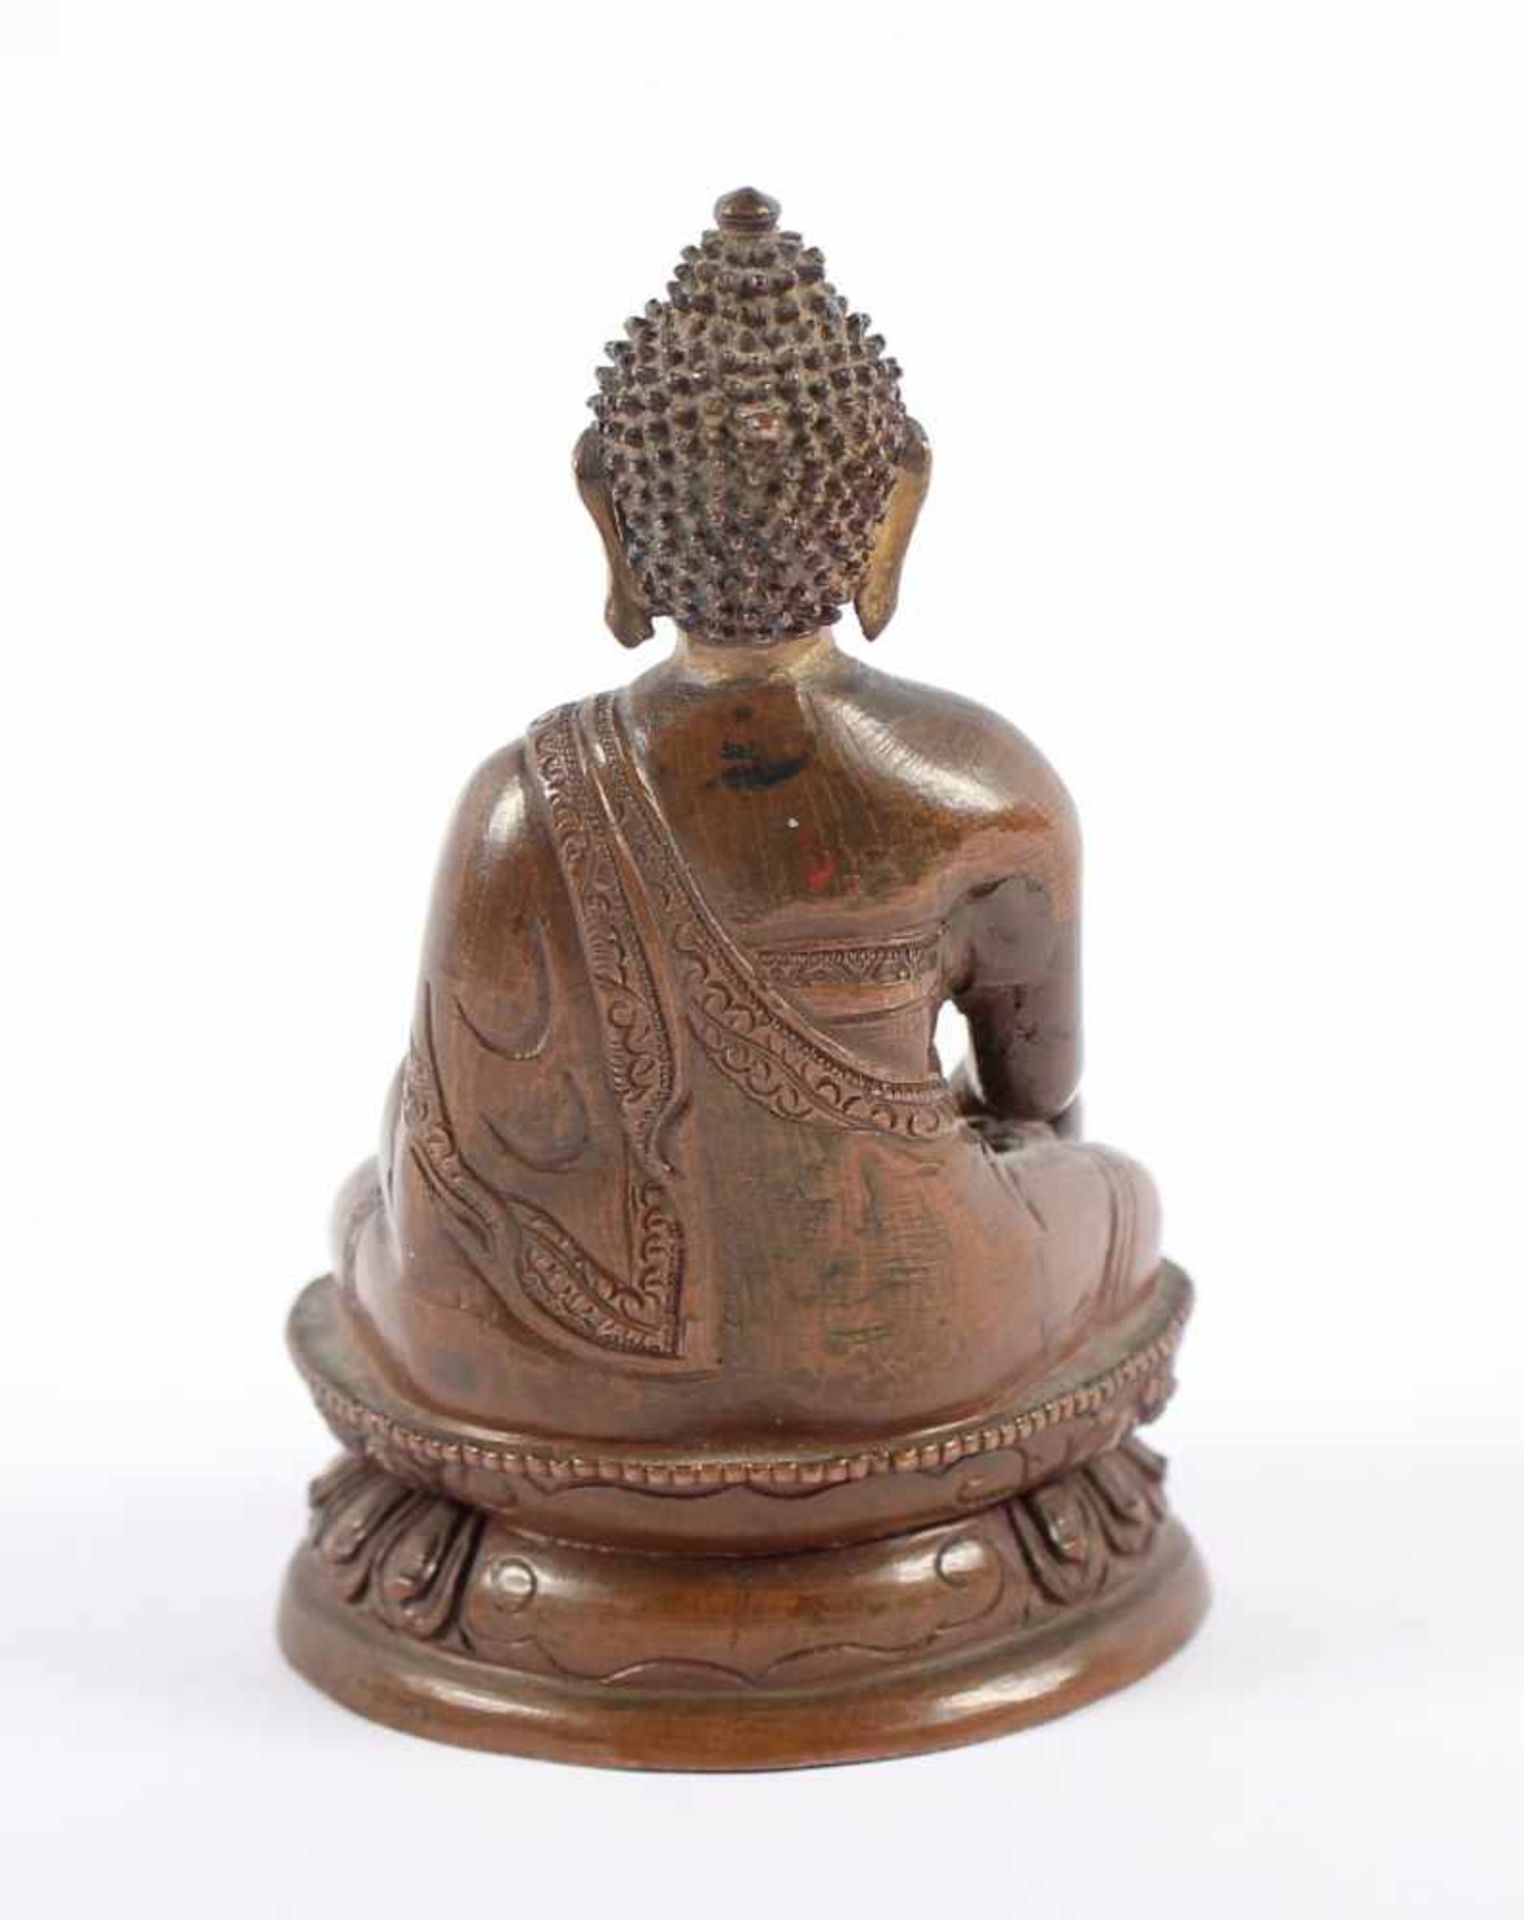 BUDDHA SHAKYAMUNI, stark kupferhaltige Bronze, geschlossen, H 9,5, SINOTIBETISCH, 20.Jh. - Bild 2 aus 3